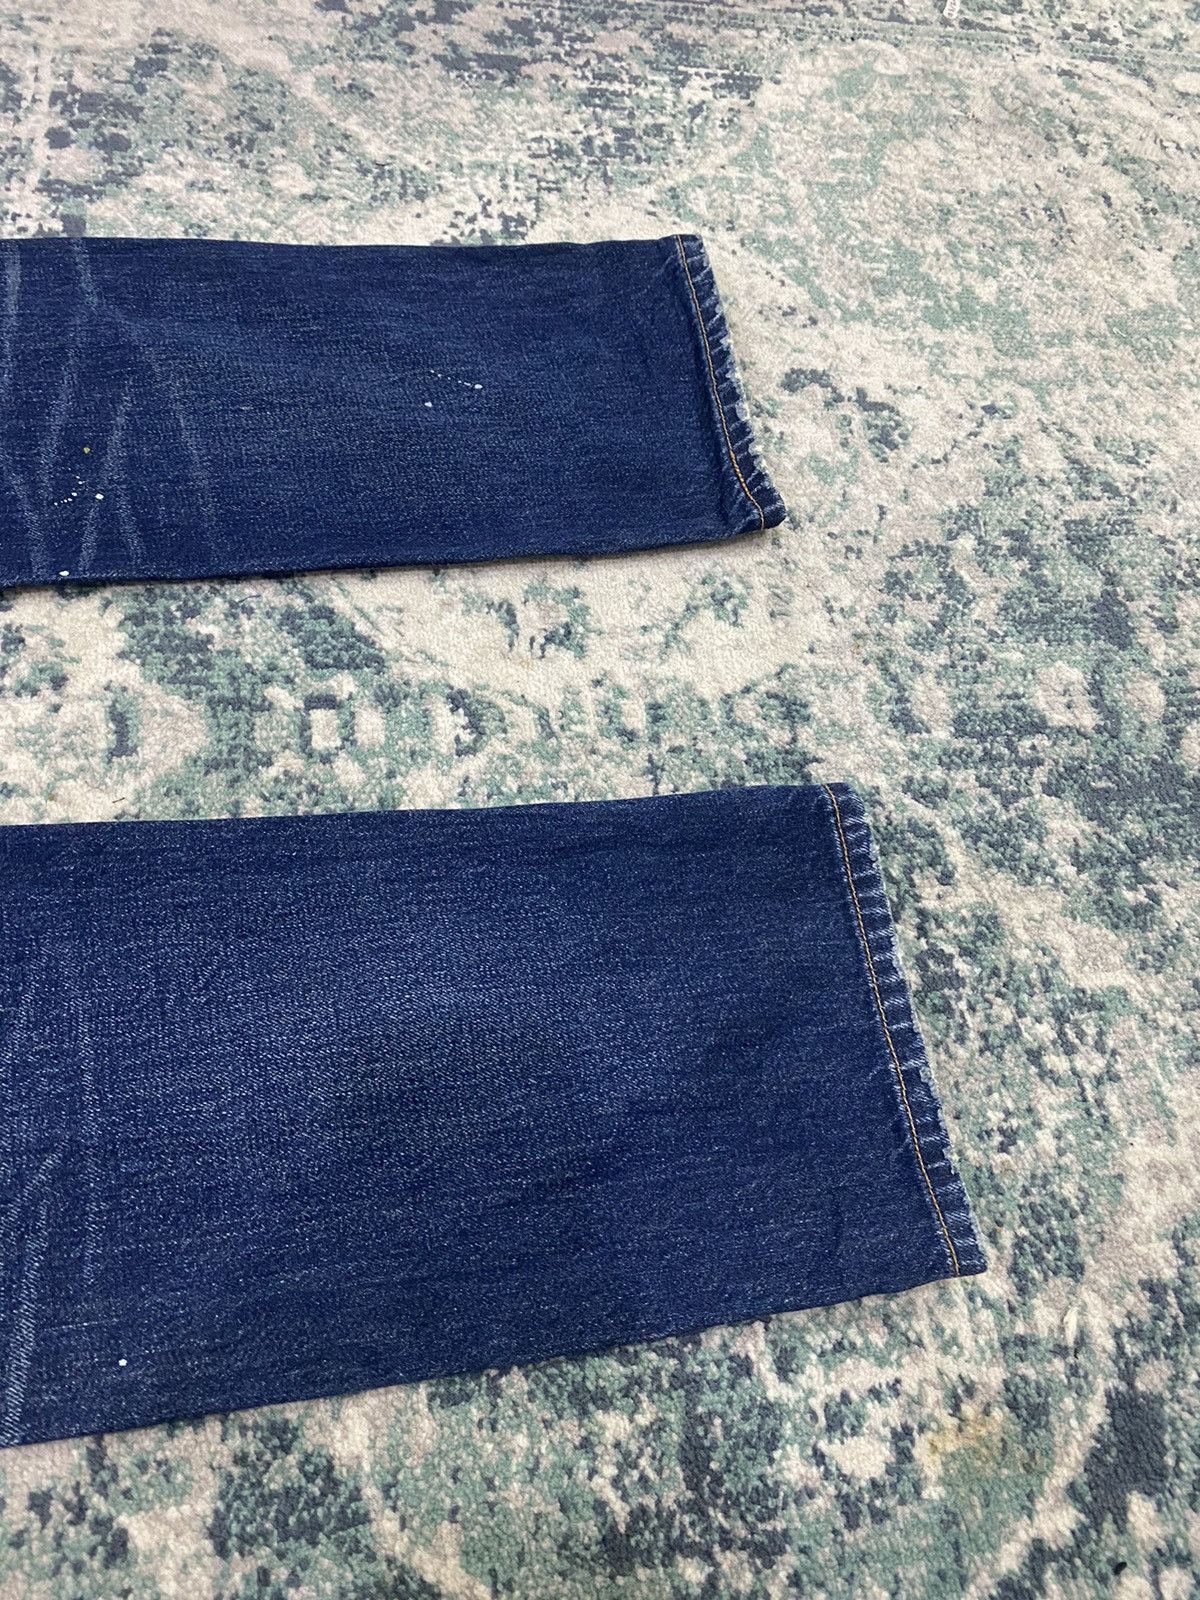 Levi’s Original Paint Splatter Limited Edition Jeans - 17